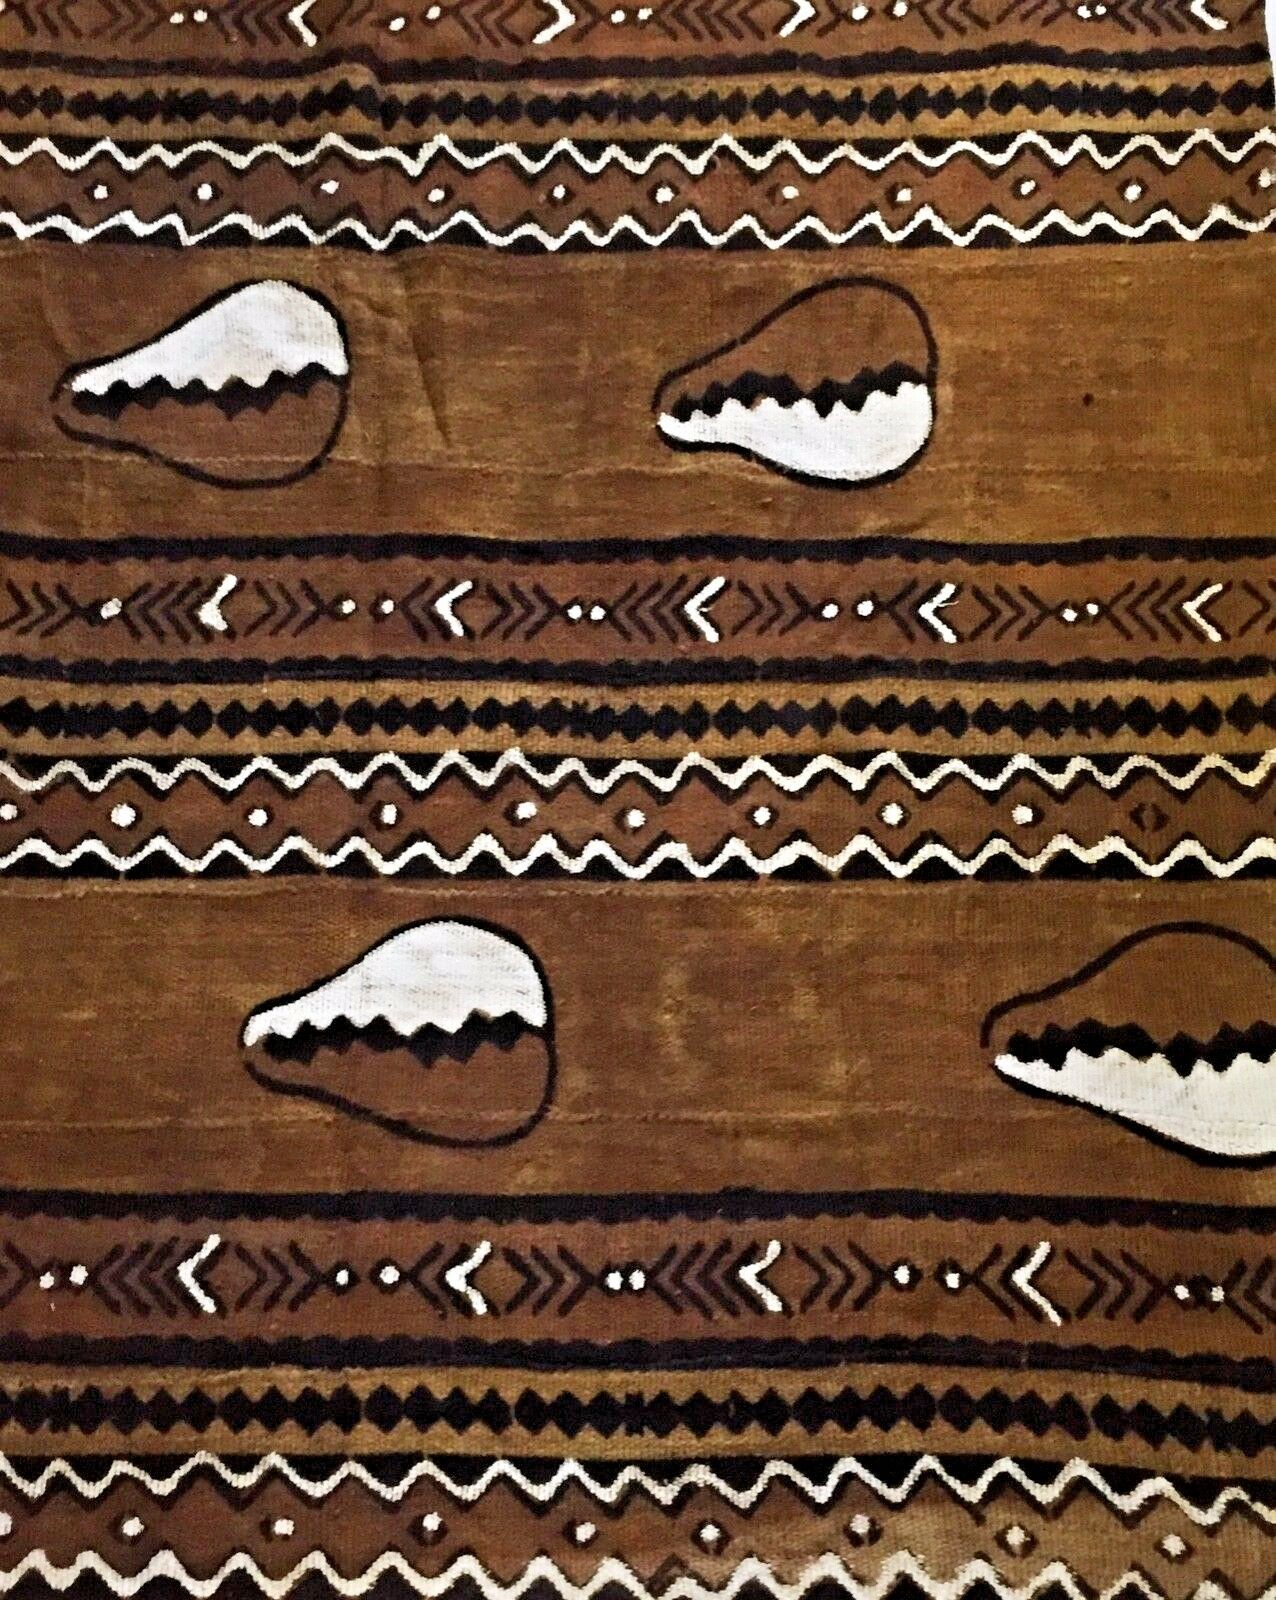 Superb Bogolan Mali Mud Cloth Textile 43 by 64 # 1812 – Ethnika